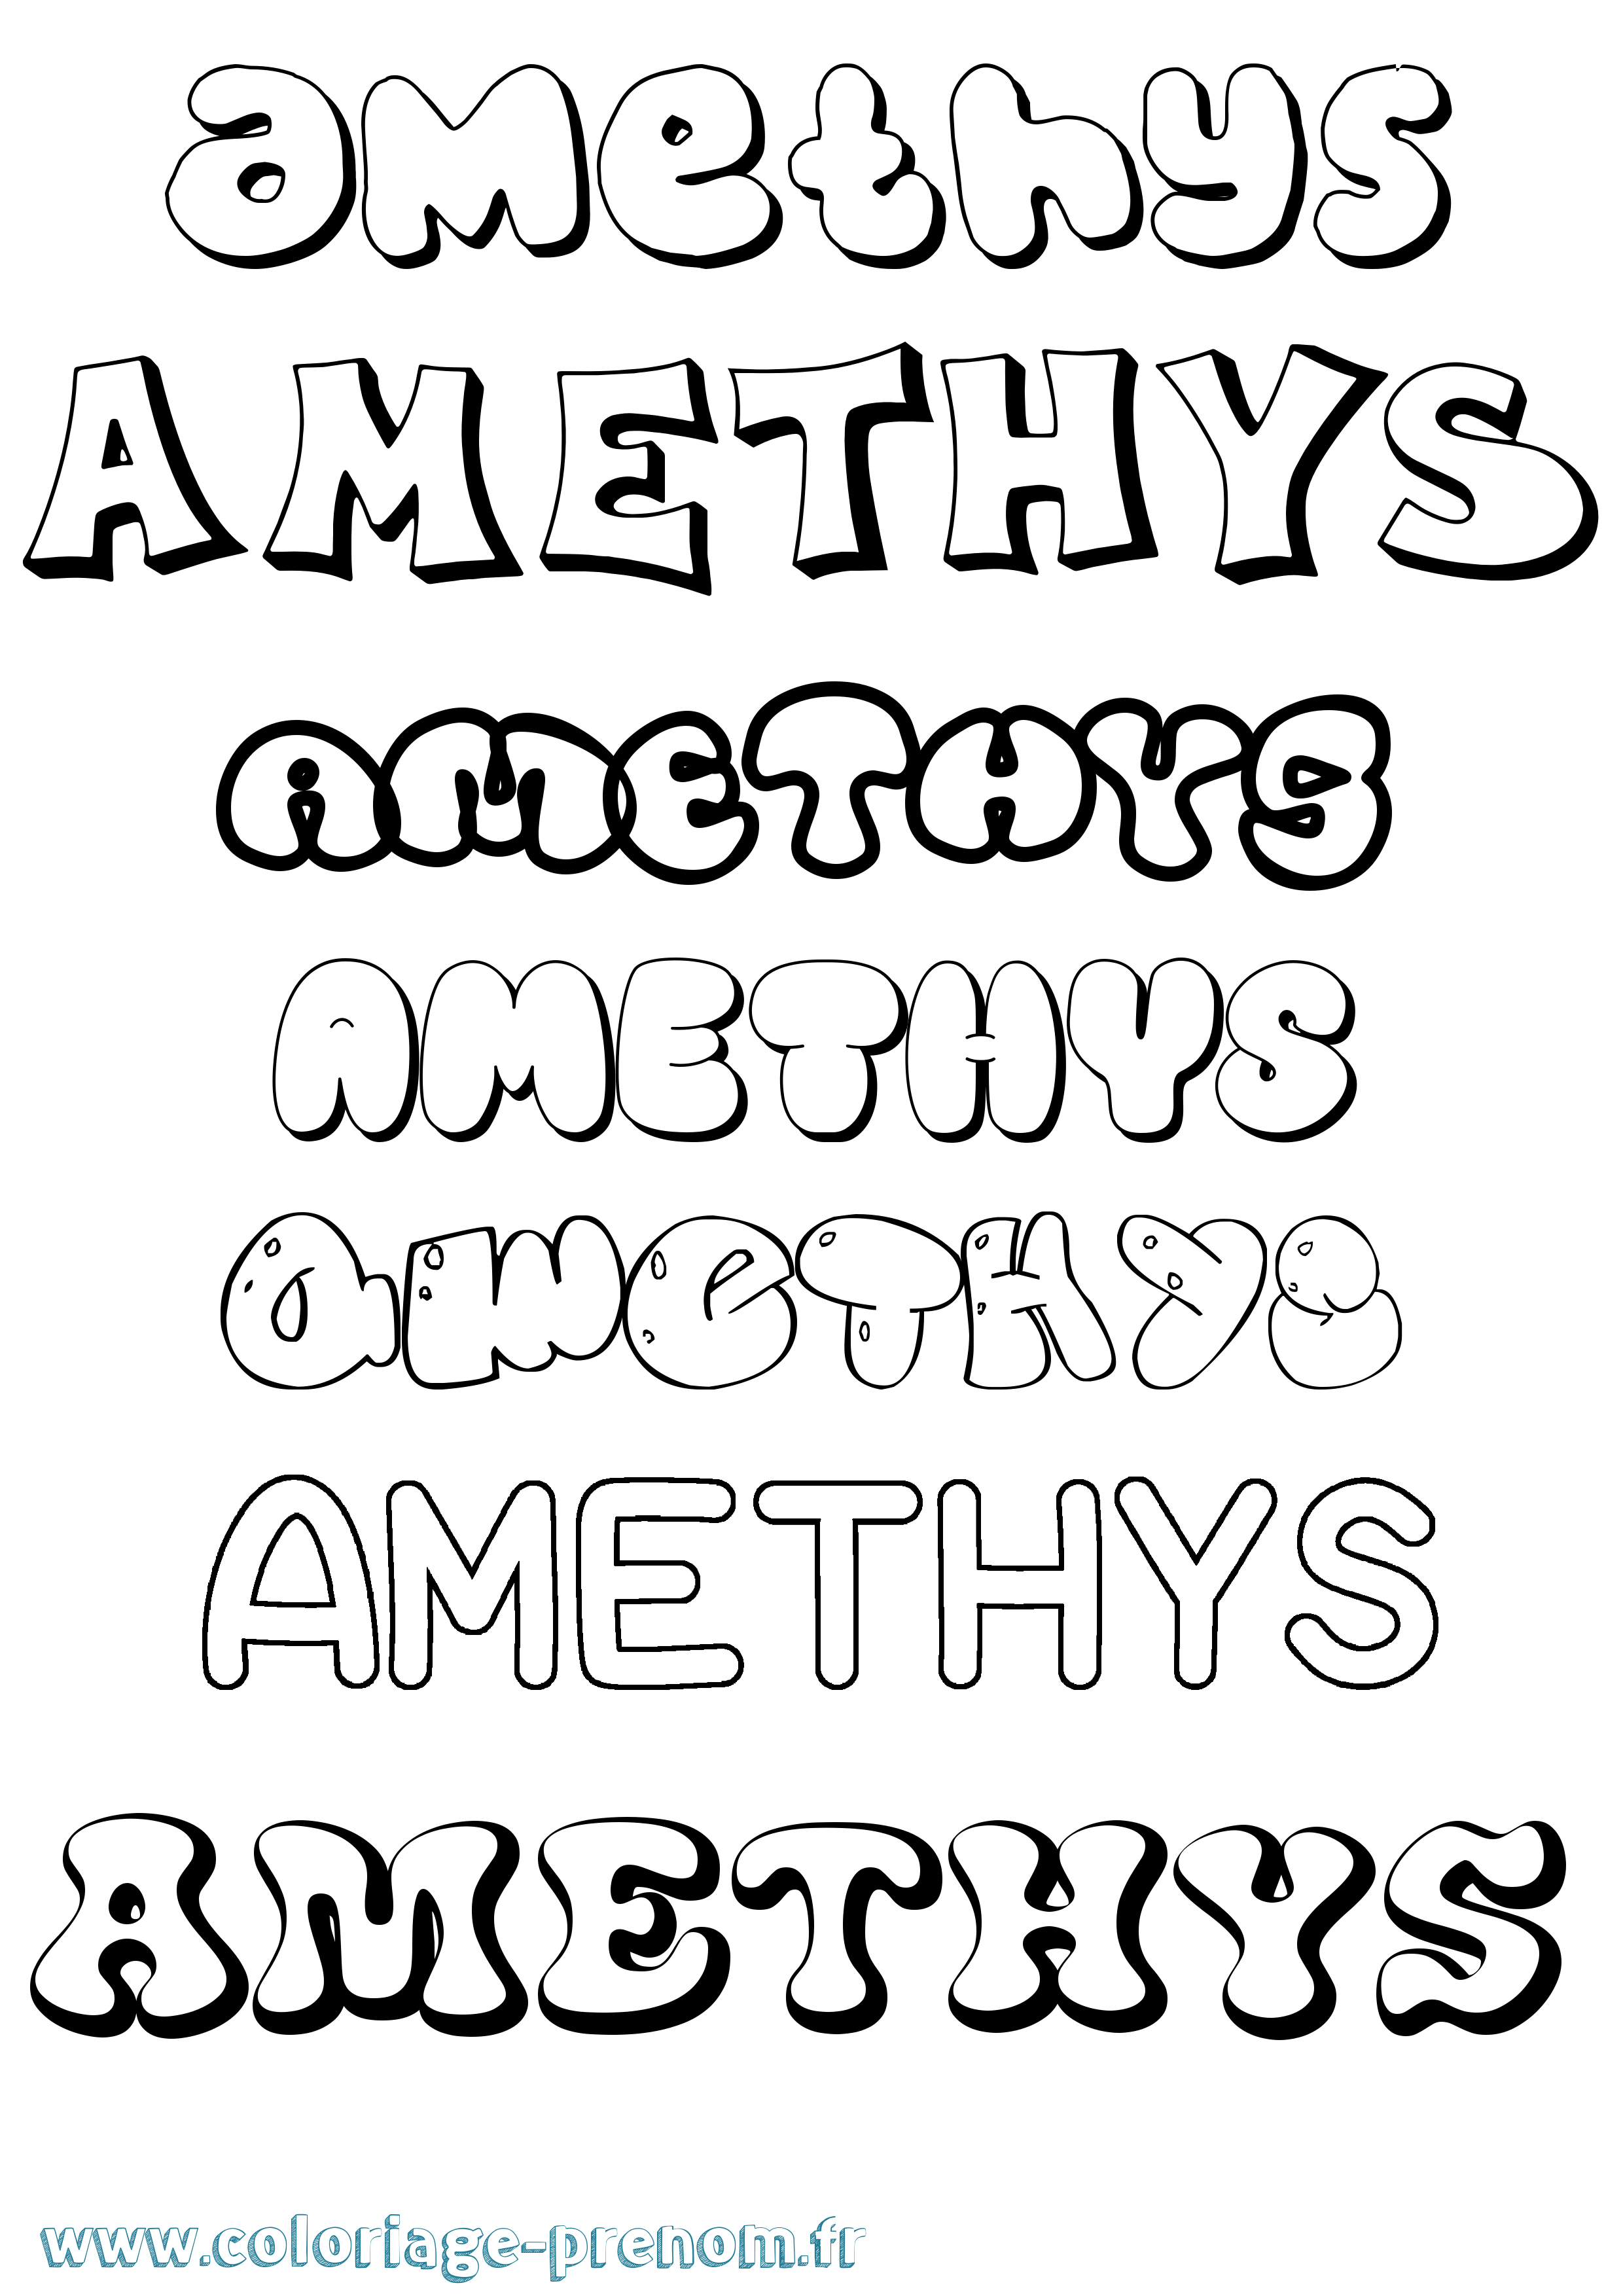 Coloriage prénom Amethys Bubble